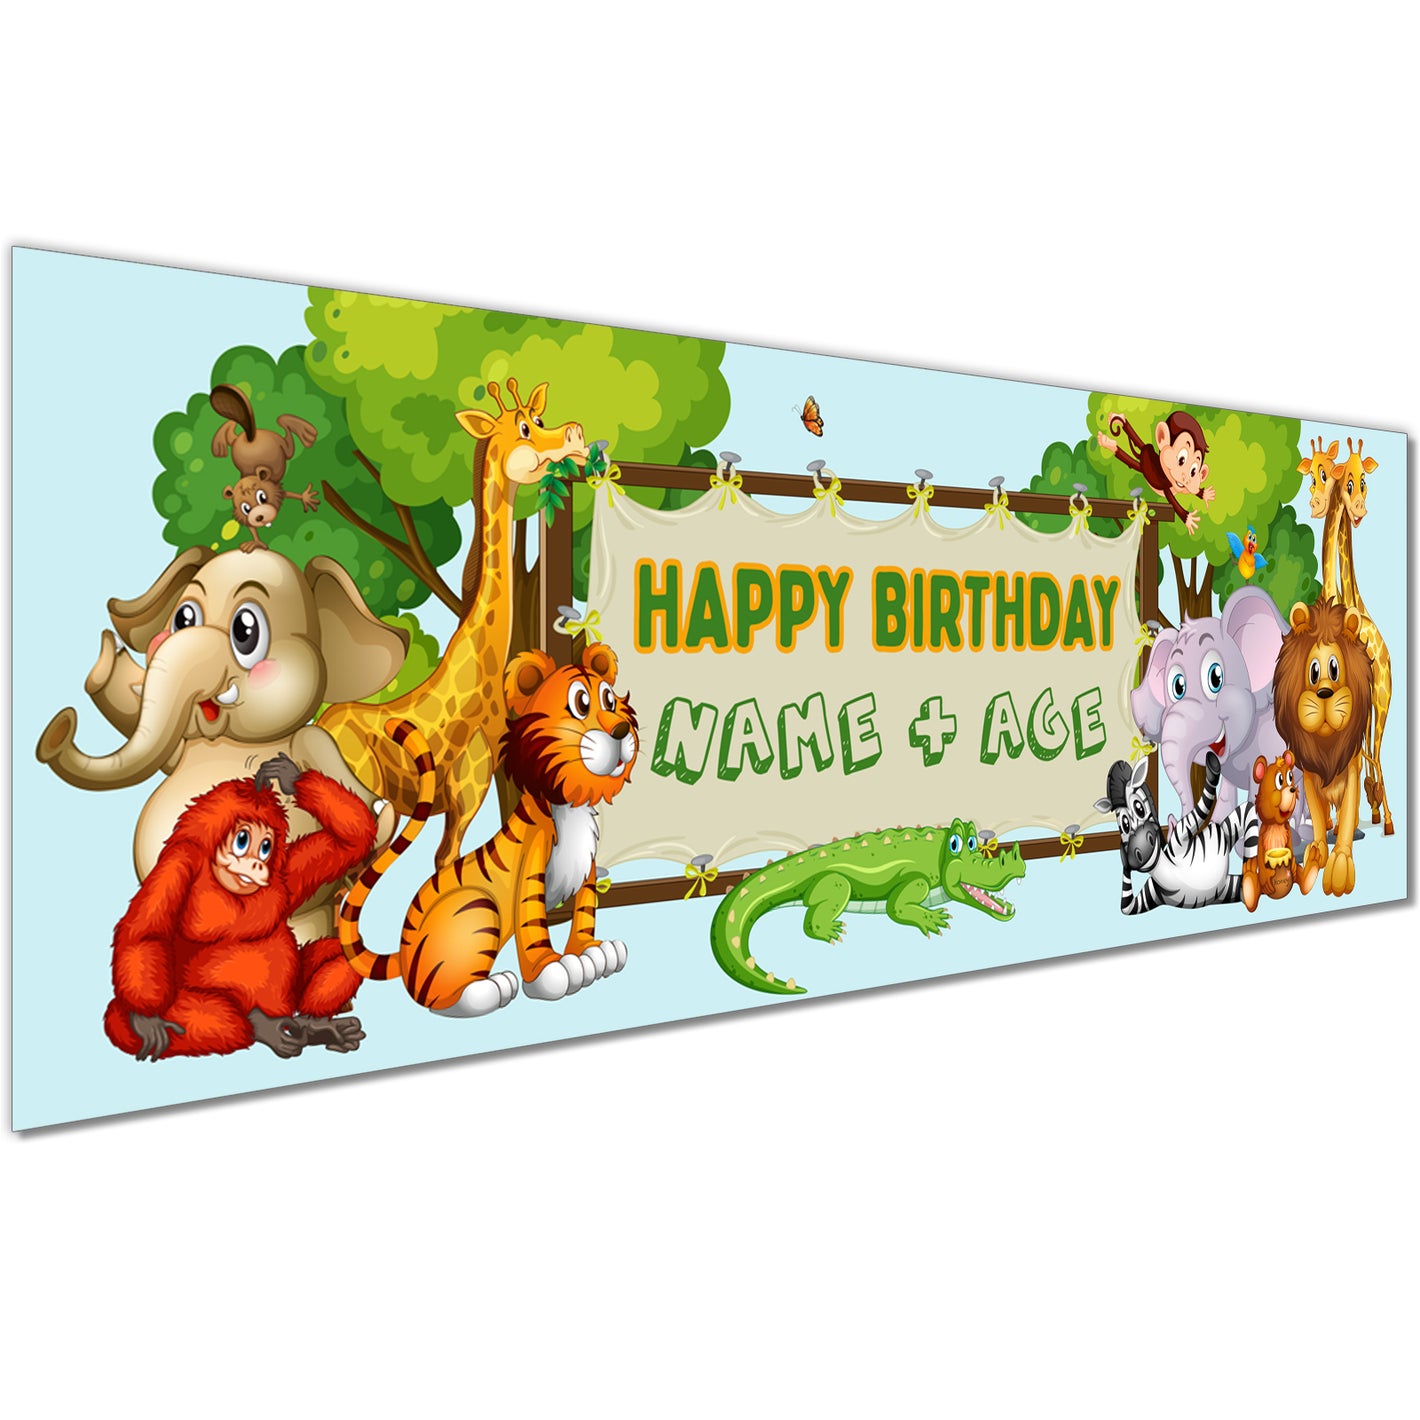 Kids Birthday Banner in Party Animals Design